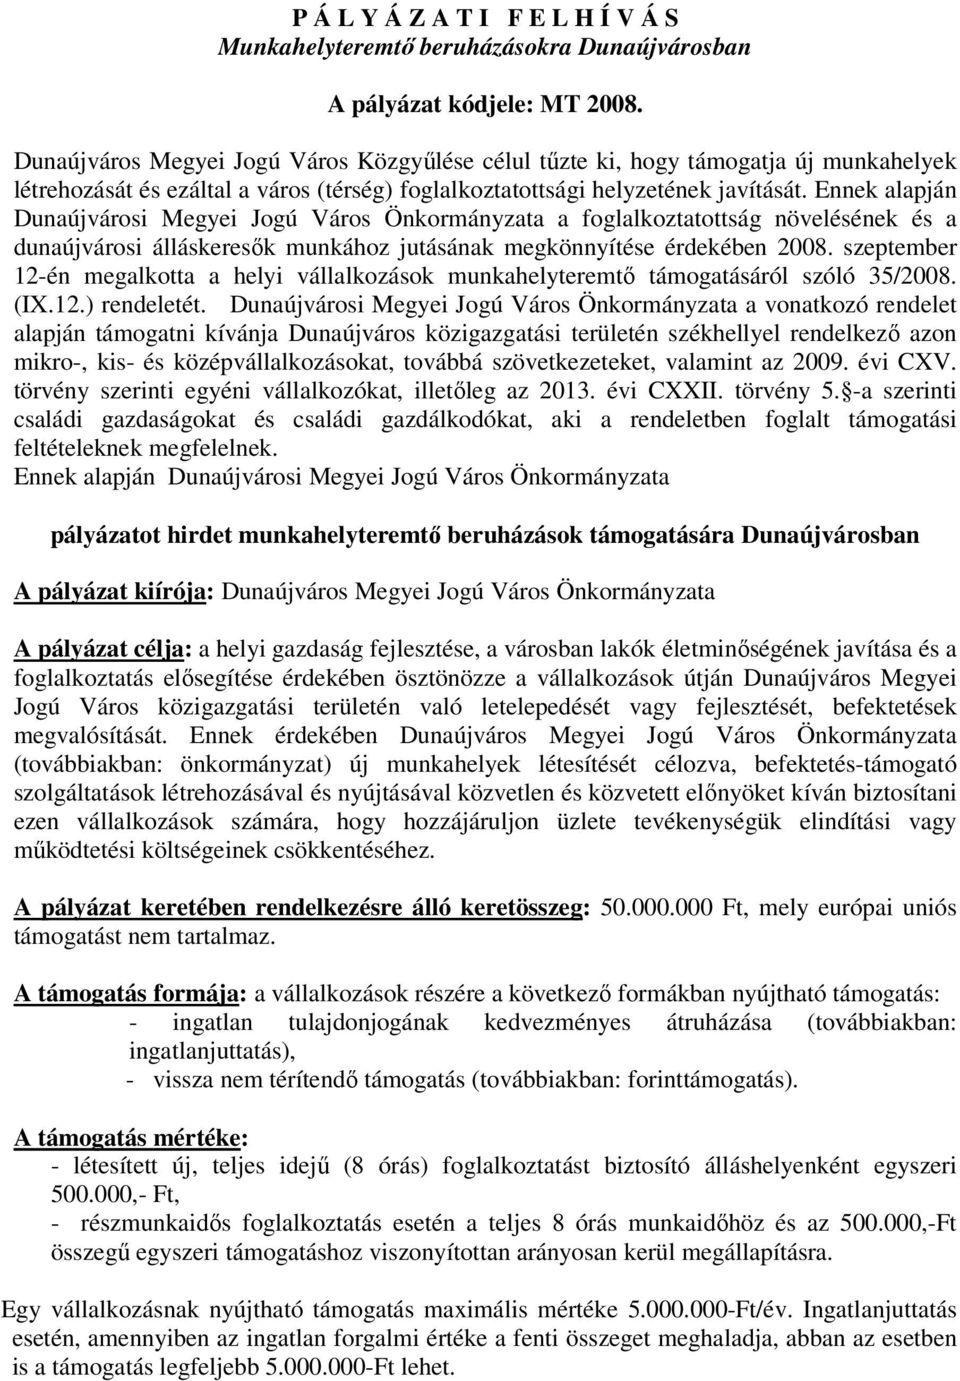 Ennek alapján Dunaújvárosi Megyei Jogú Város Önkormányzata a foglalkoztatottság növelésének és a dunaújvárosi álláskeresők munkához jutásának megkönnyítése érdekében 2008.